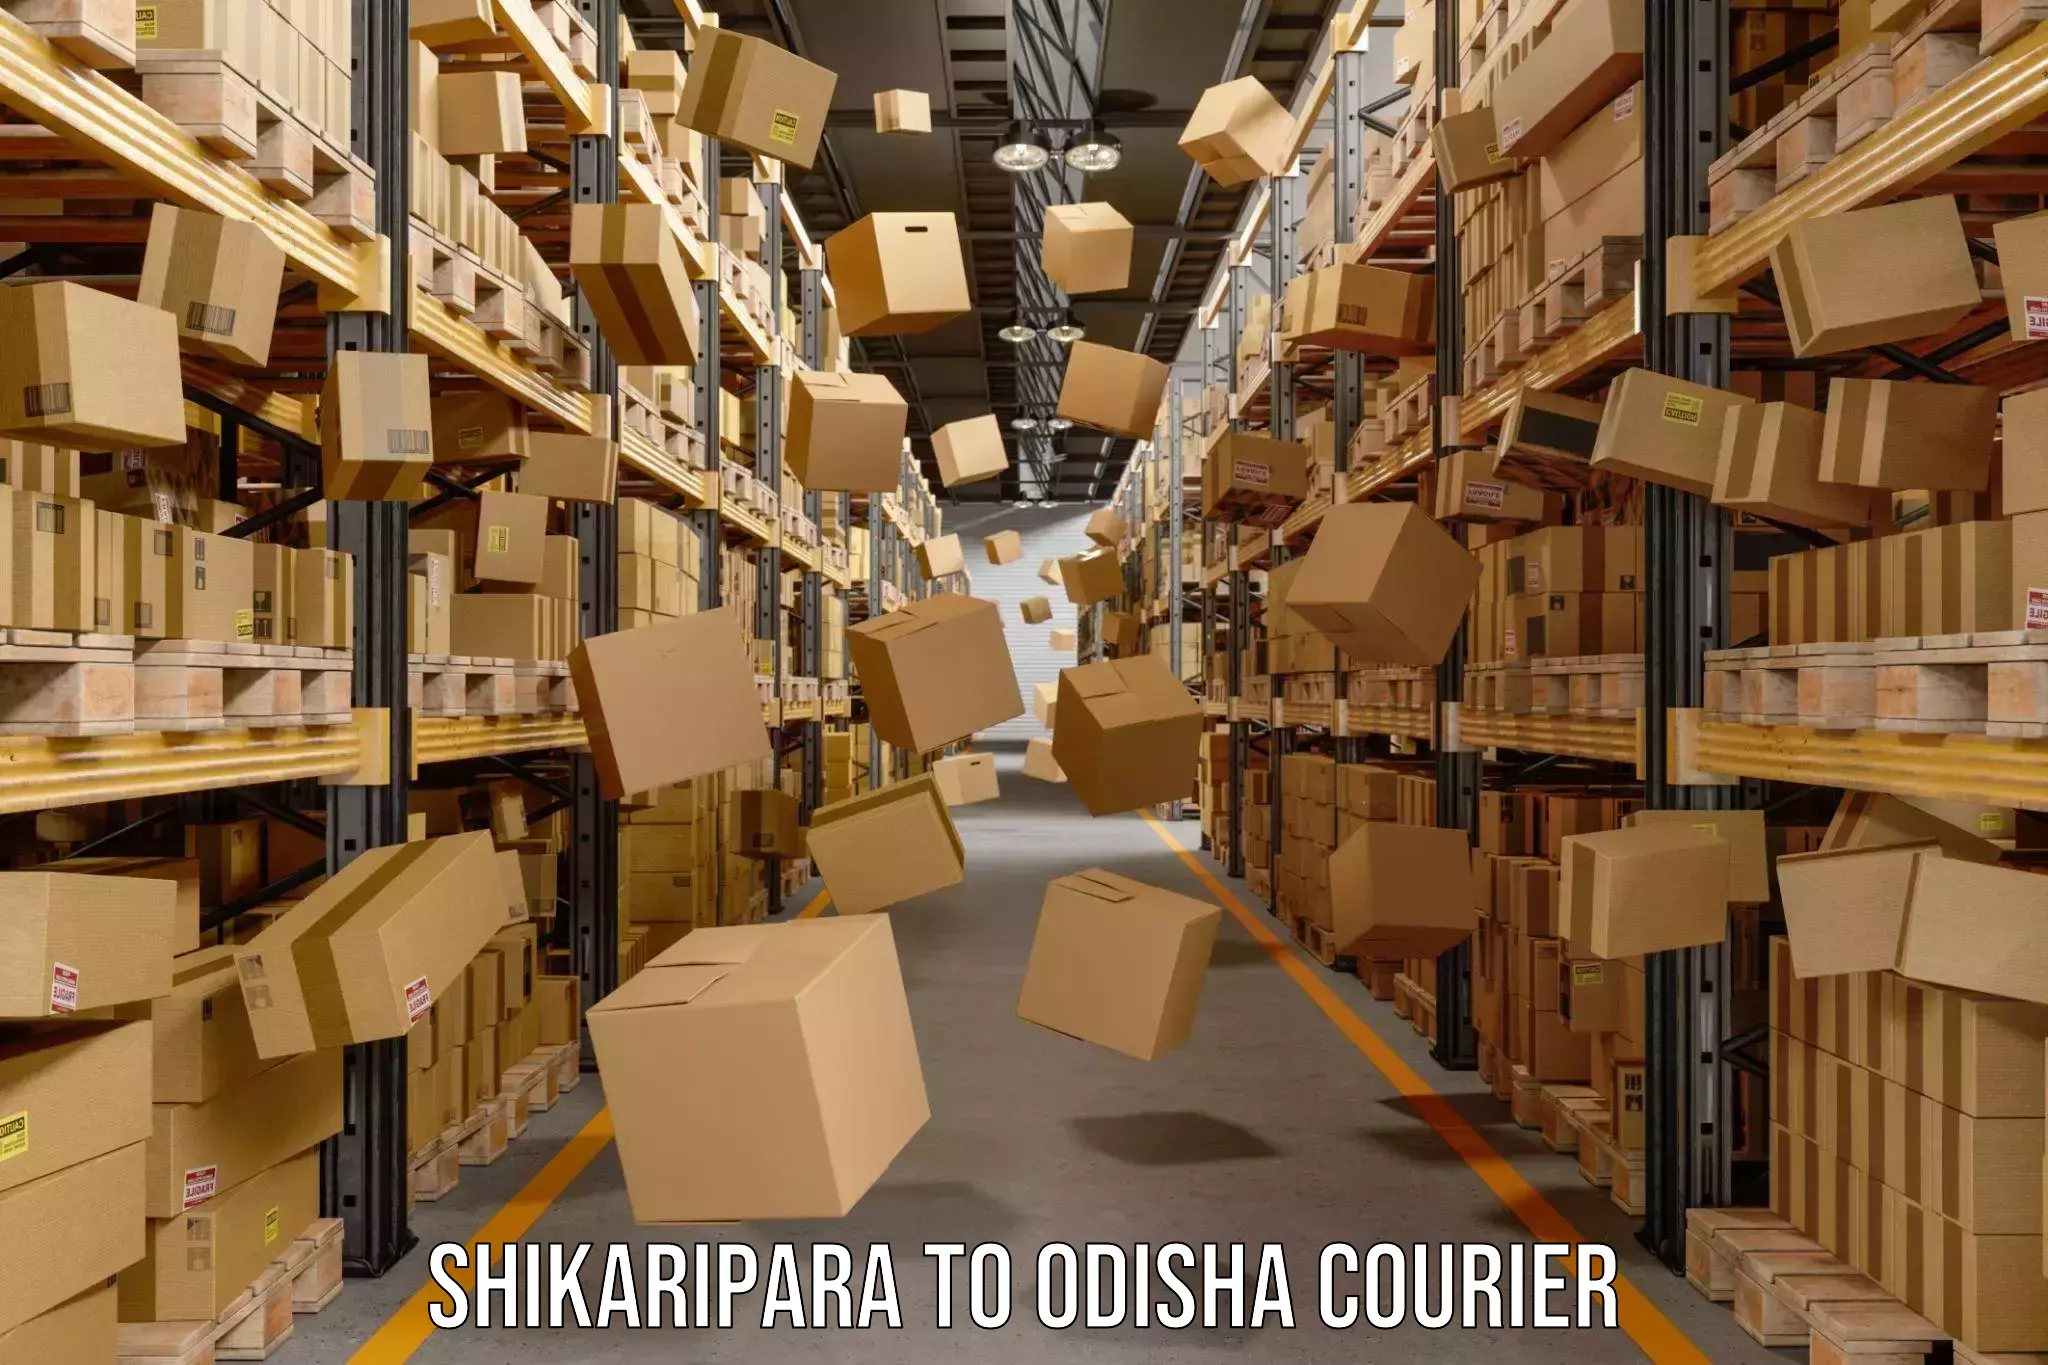 Overnight delivery services Shikaripara to Odisha